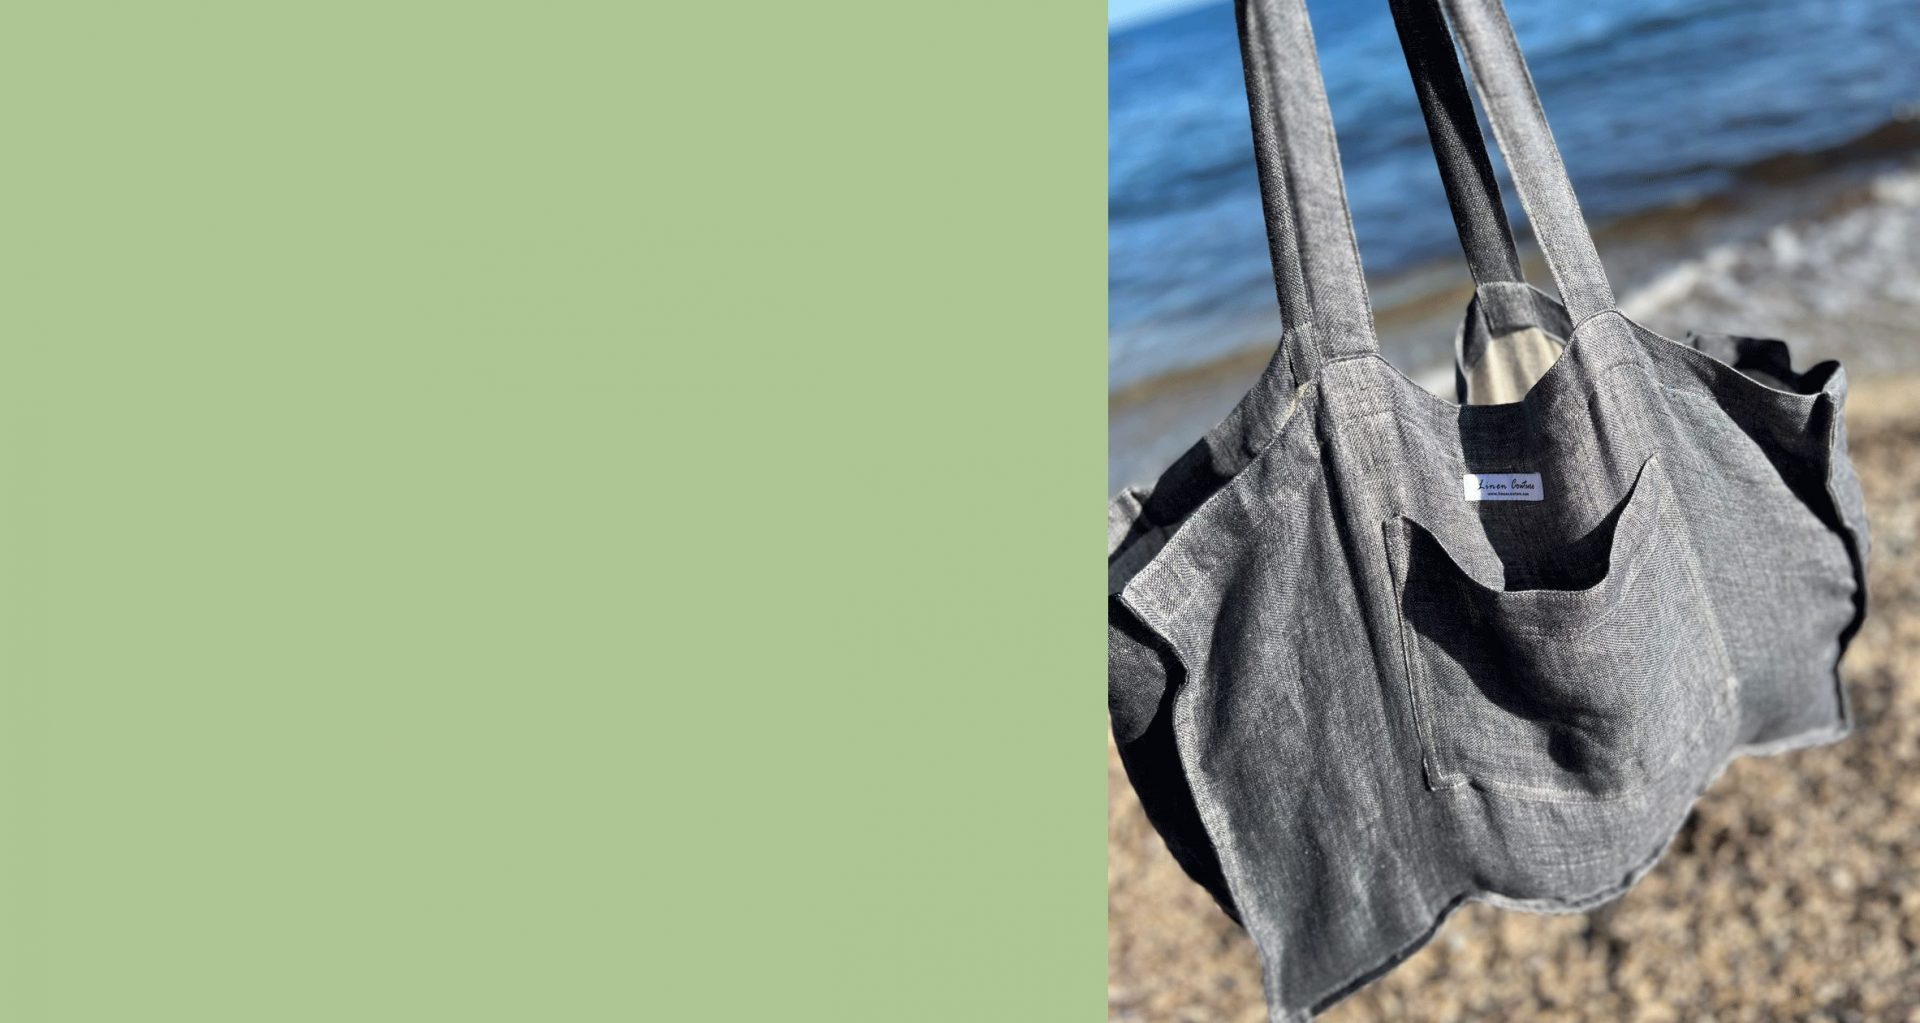 Bannerbild links grün, rechts Foto von grauer Leinen Strandtasche von Linen Couture am Strand